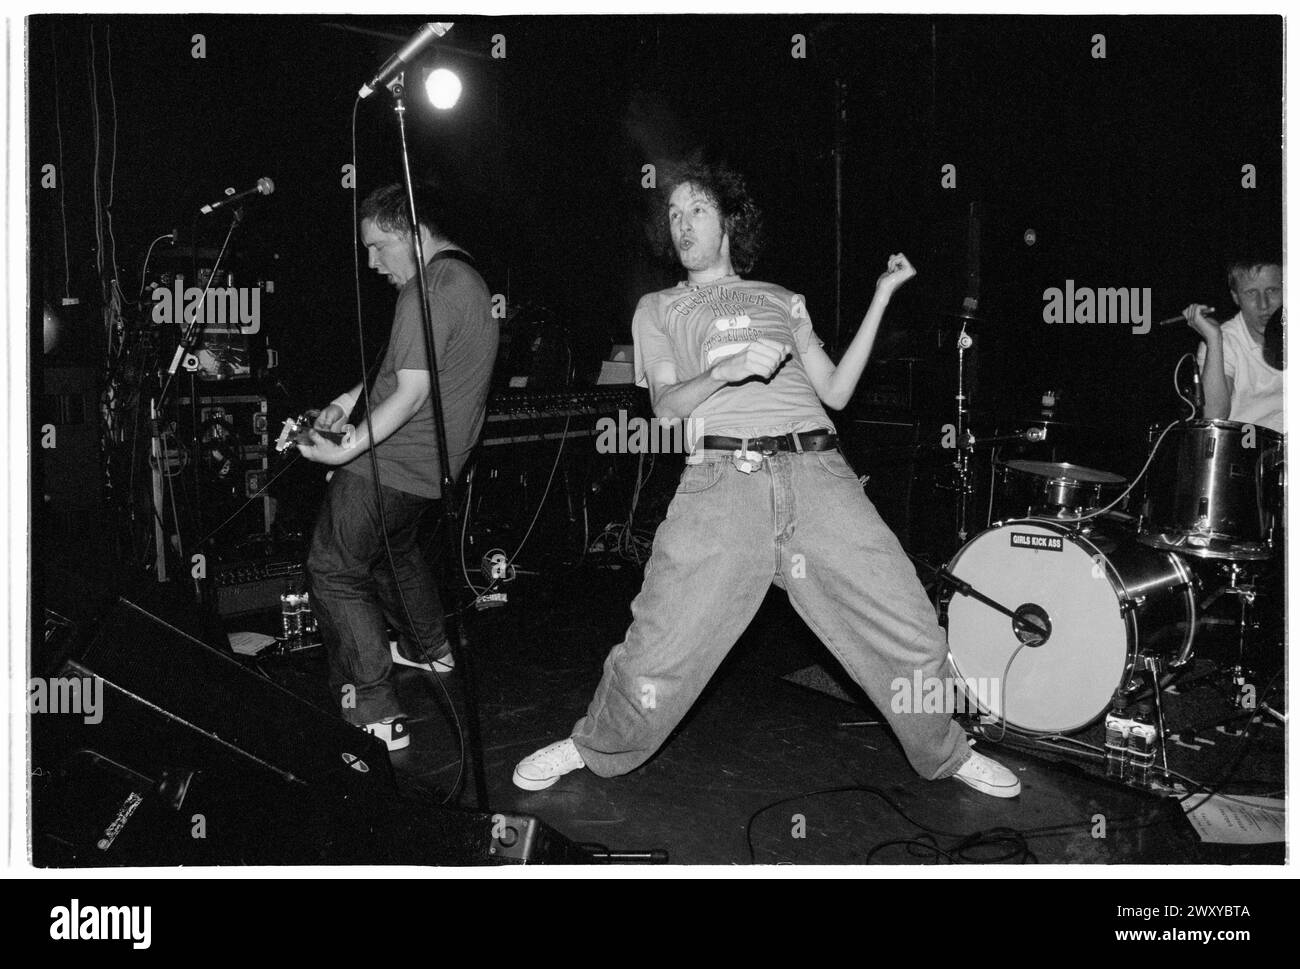 HUNDRED REASONS, EMO CONCERT, 2001: Colin Doran della band Emo rock Hundred Reaons suona al Clwb Ifor Bach Welsh Club in Galles, Regno Unito, 14 maggio 2001. Foto: Rob Watkins. INFO: 100 Reasons, un gruppo rock post-hardcore britannico formatosi nel 1999 a Londra, ha guadagnato il plauso per le loro energiche esibizioni dal vivo e la scrittura emotiva delle canzoni. Successi come "If i Could" e "Silver" hanno mostrato il loro suono dinamico, guadagnando loro un seguito devoto nella scena musicale dei primi anni '2000. Foto Stock